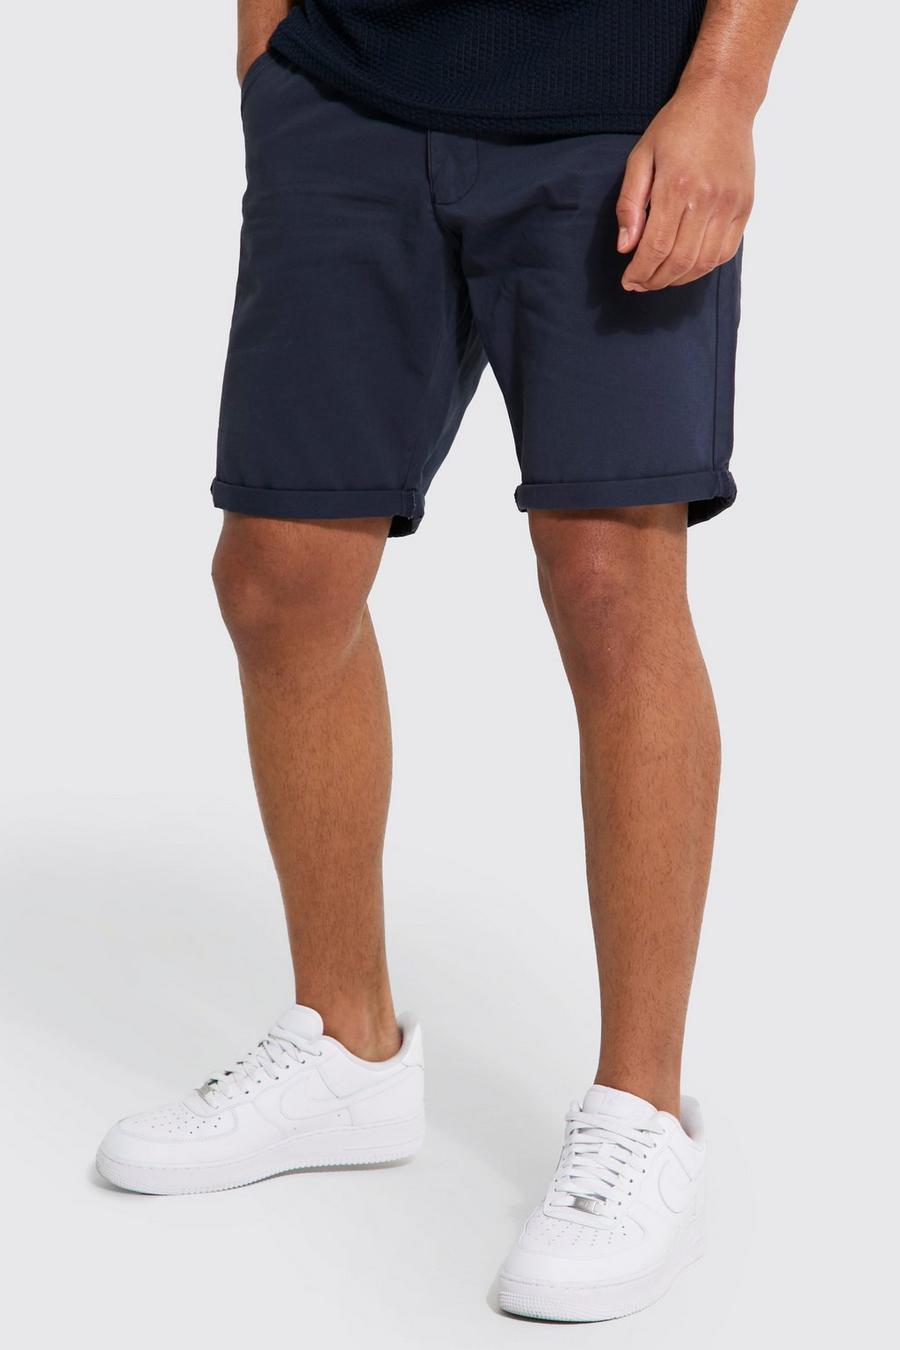 Pantalón corto Tall chino ajustado, Navy azul marino